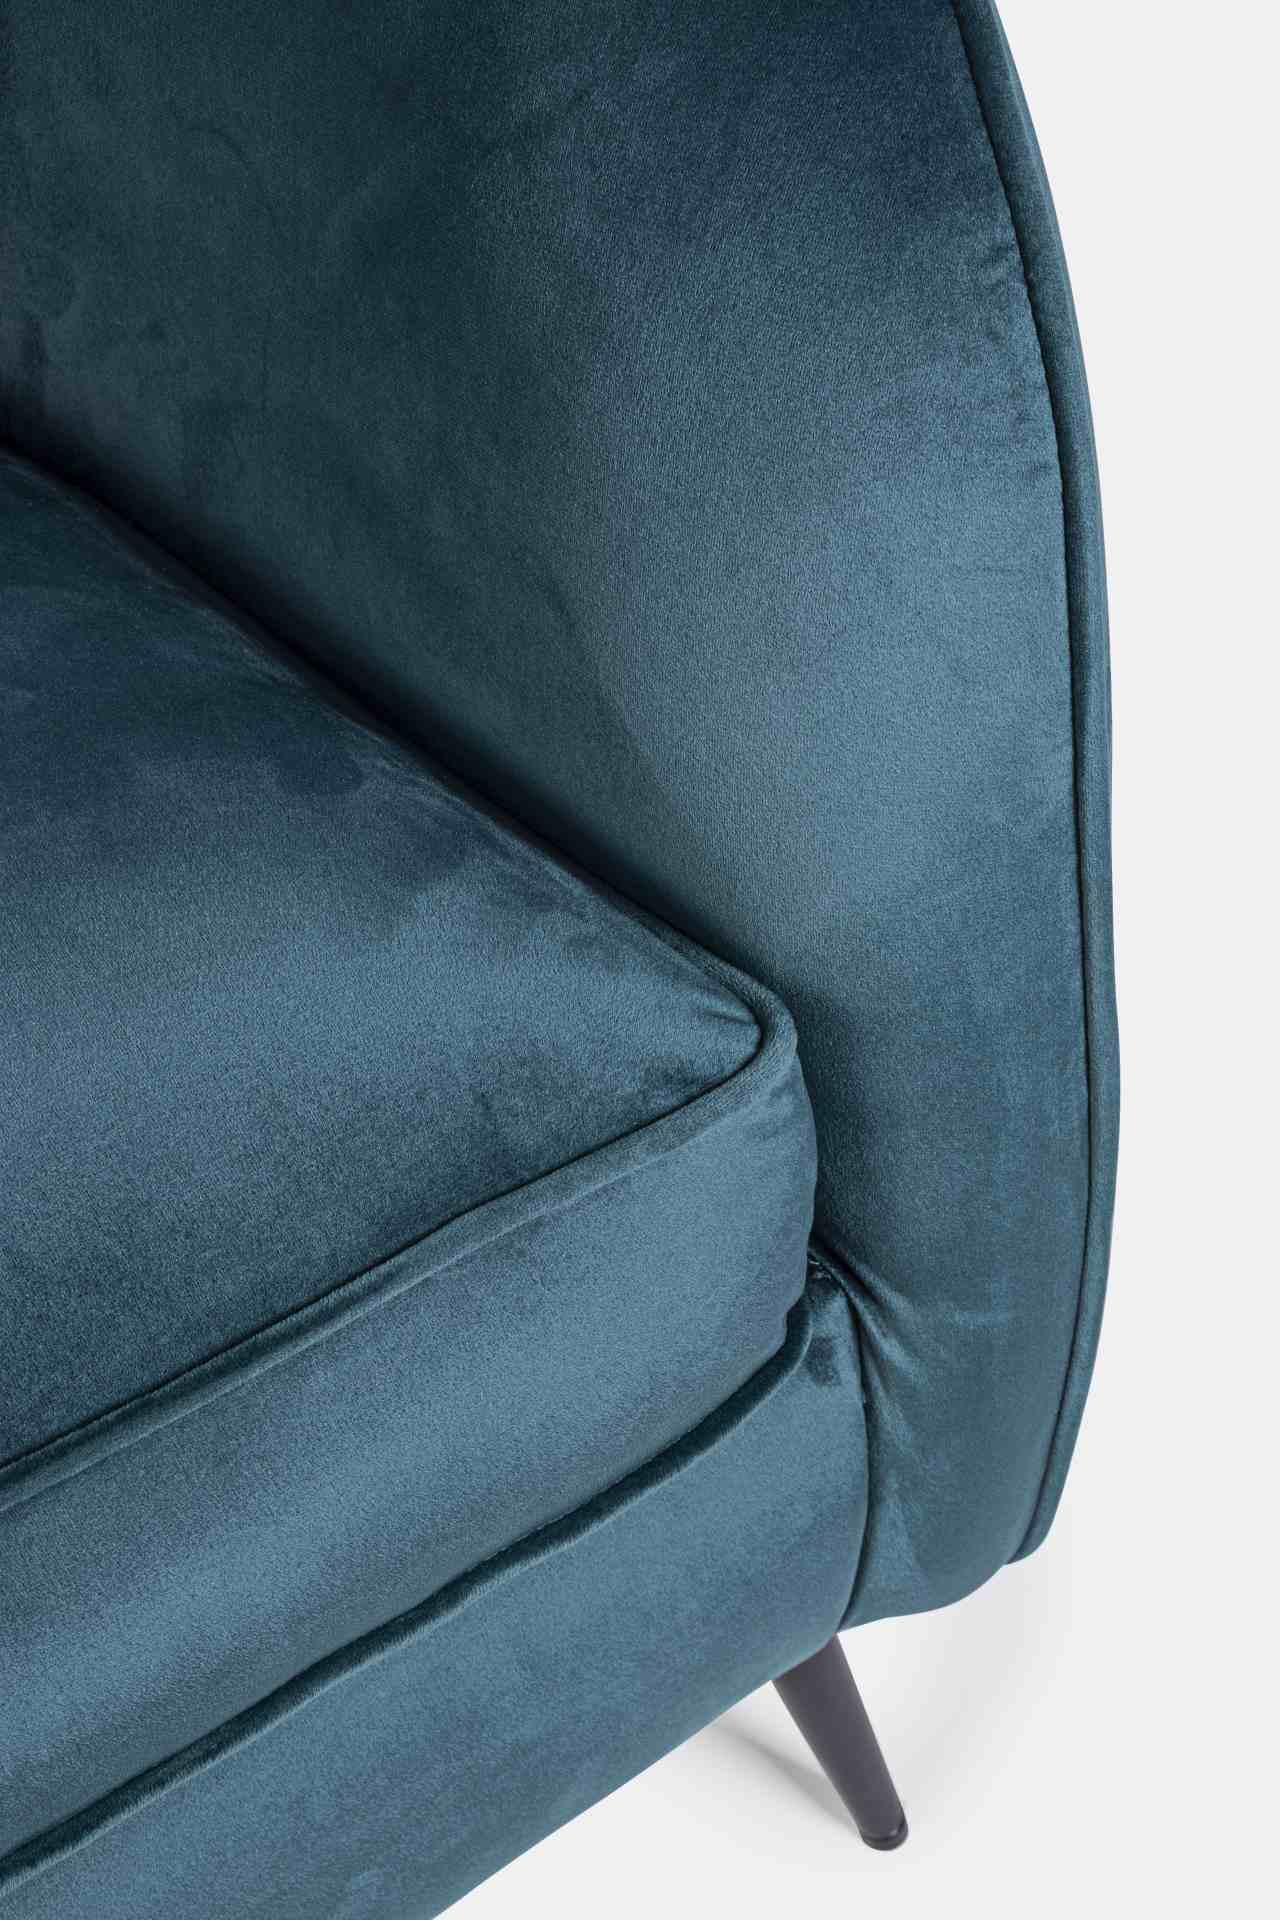 Das Sofa Candis überzeugt mit seinem modernen Design. Gefertigt wurde es aus Stoff in Samt-Optik, welcher einen blauen Farbton besitzt. Das Gestell ist aus Metall und hat eine schwarze Farbe. Das Sofa ist in der Ausführung als 2-Sitzer. Die Breite beträgt